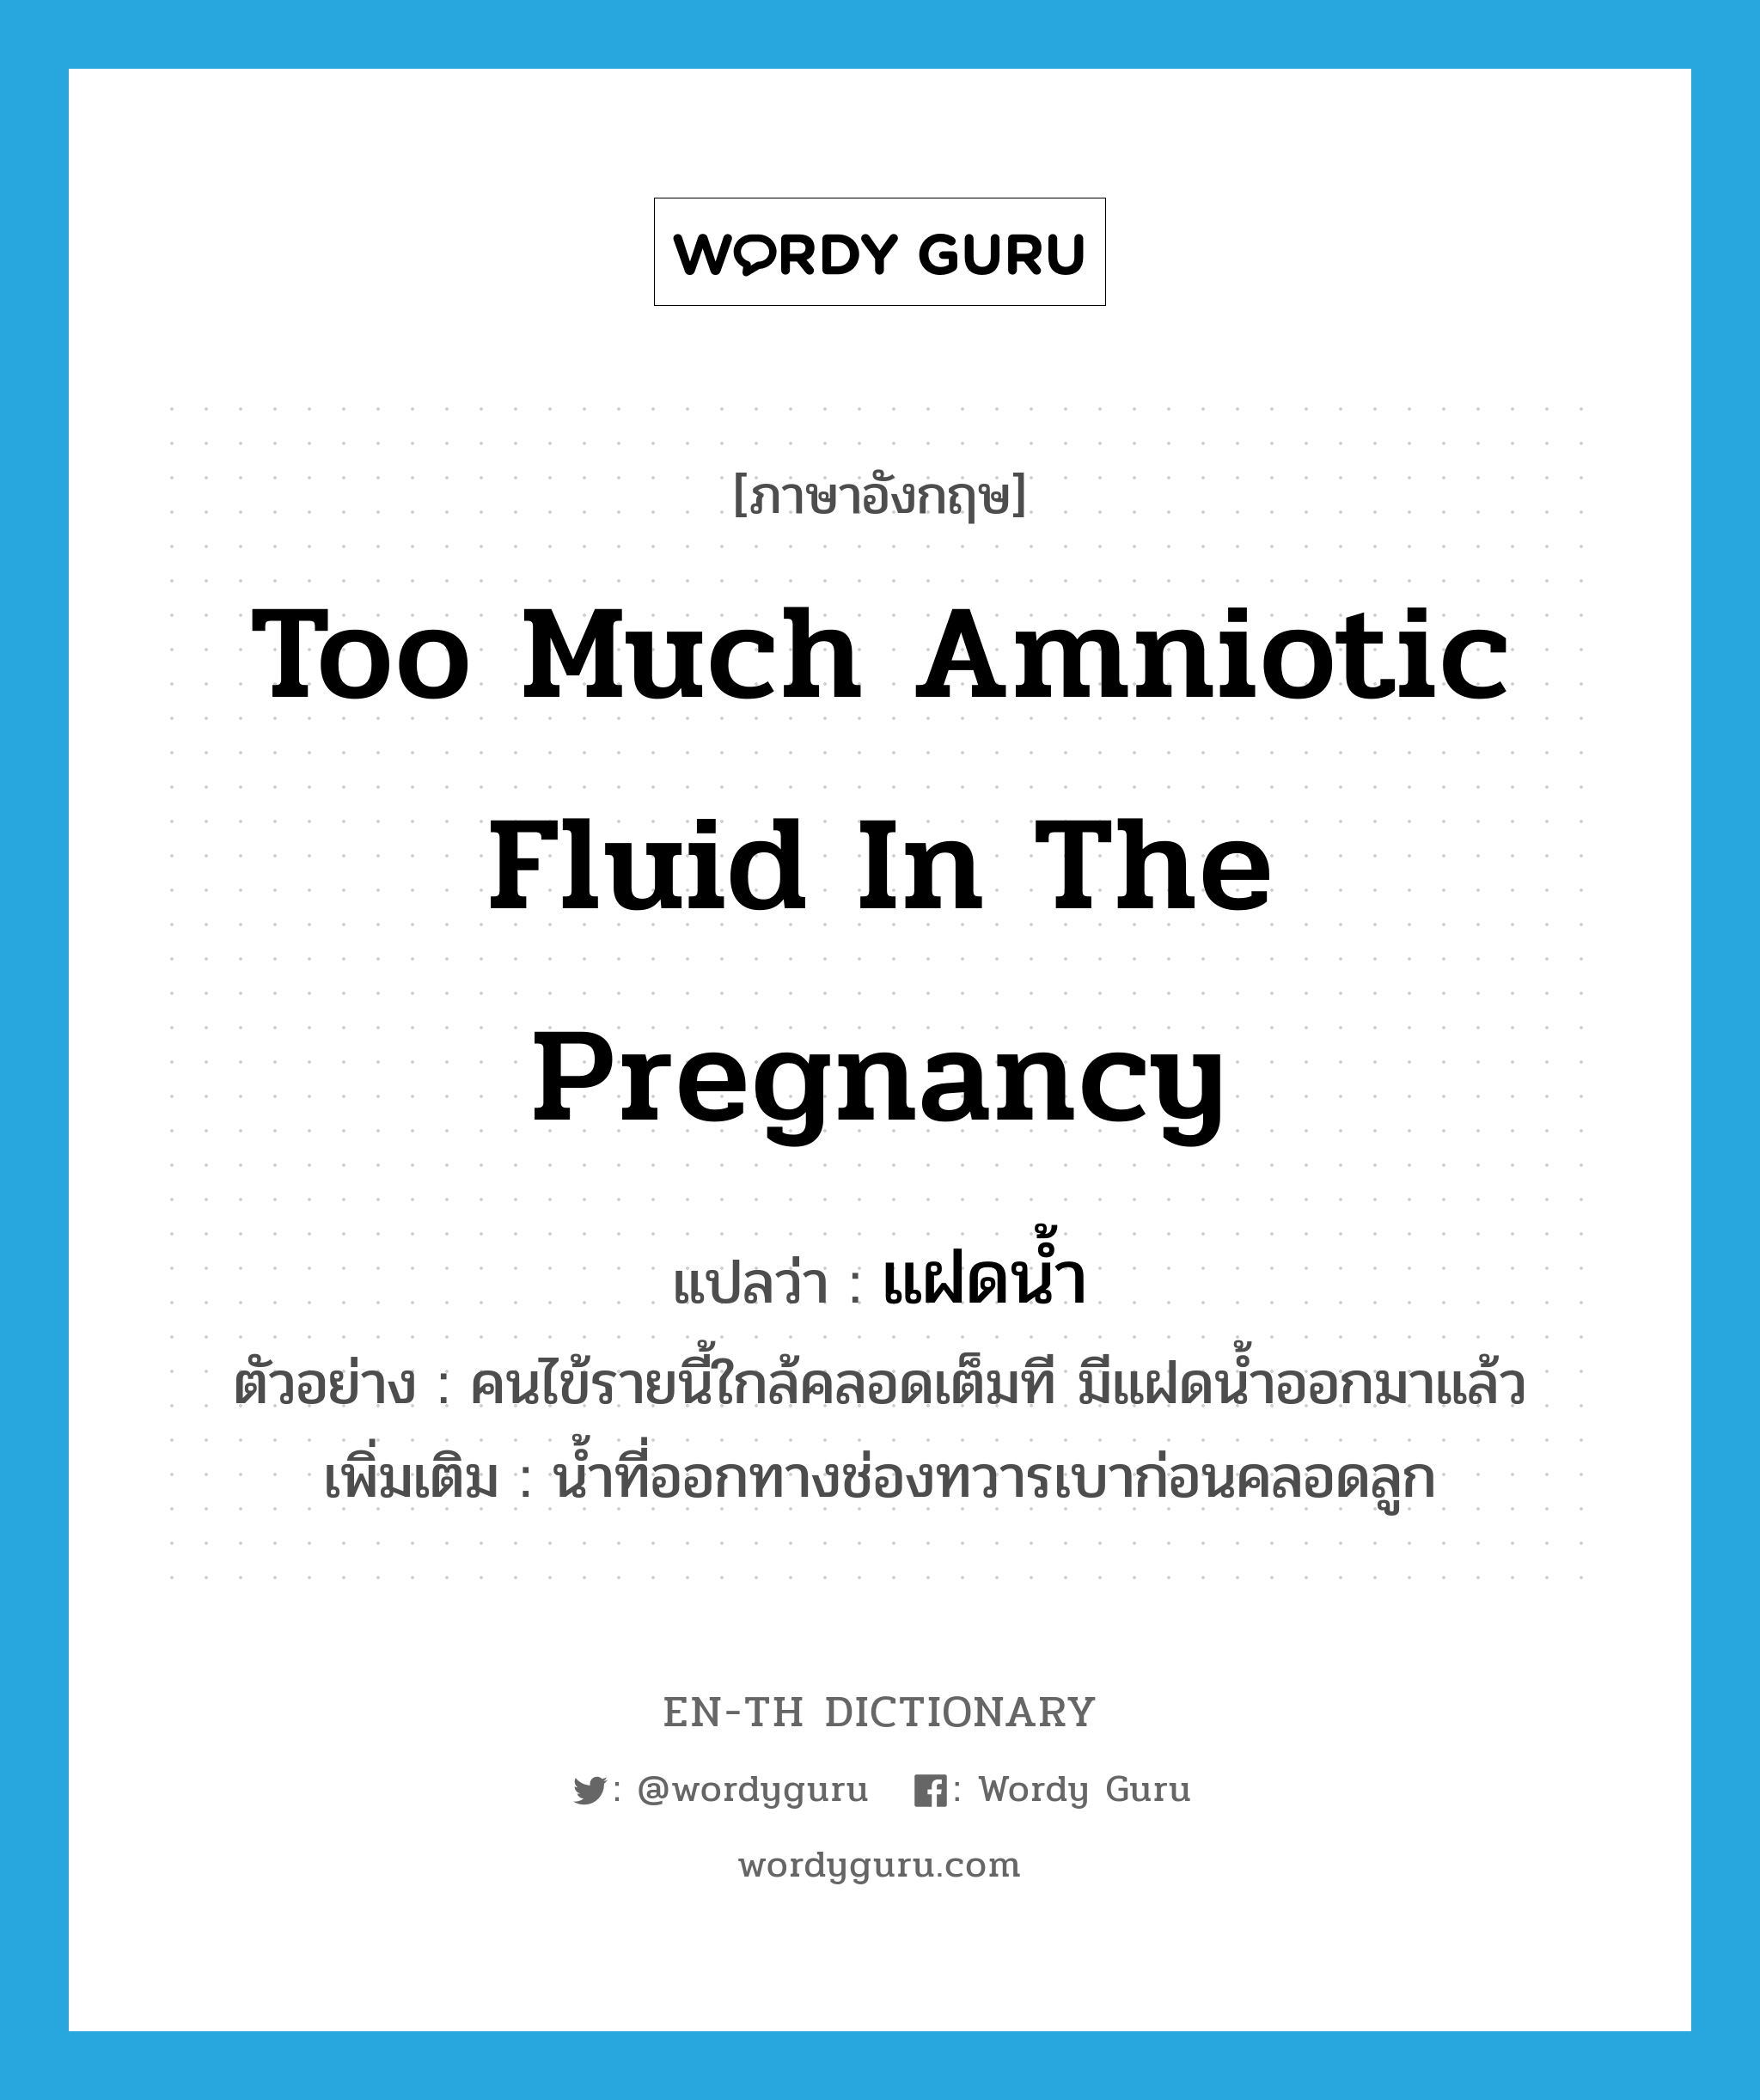 too much amniotic fluid in the pregnancy แปลว่า?, คำศัพท์ภาษาอังกฤษ too much amniotic fluid in the pregnancy แปลว่า แฝดน้ำ ประเภท N ตัวอย่าง คนไข้รายนี้ใกล้คลอดเต็มที มีแฝดน้ำออกมาแล้ว เพิ่มเติม น้ำที่ออกทางช่องทวารเบาก่อนคลอดลูก หมวด N